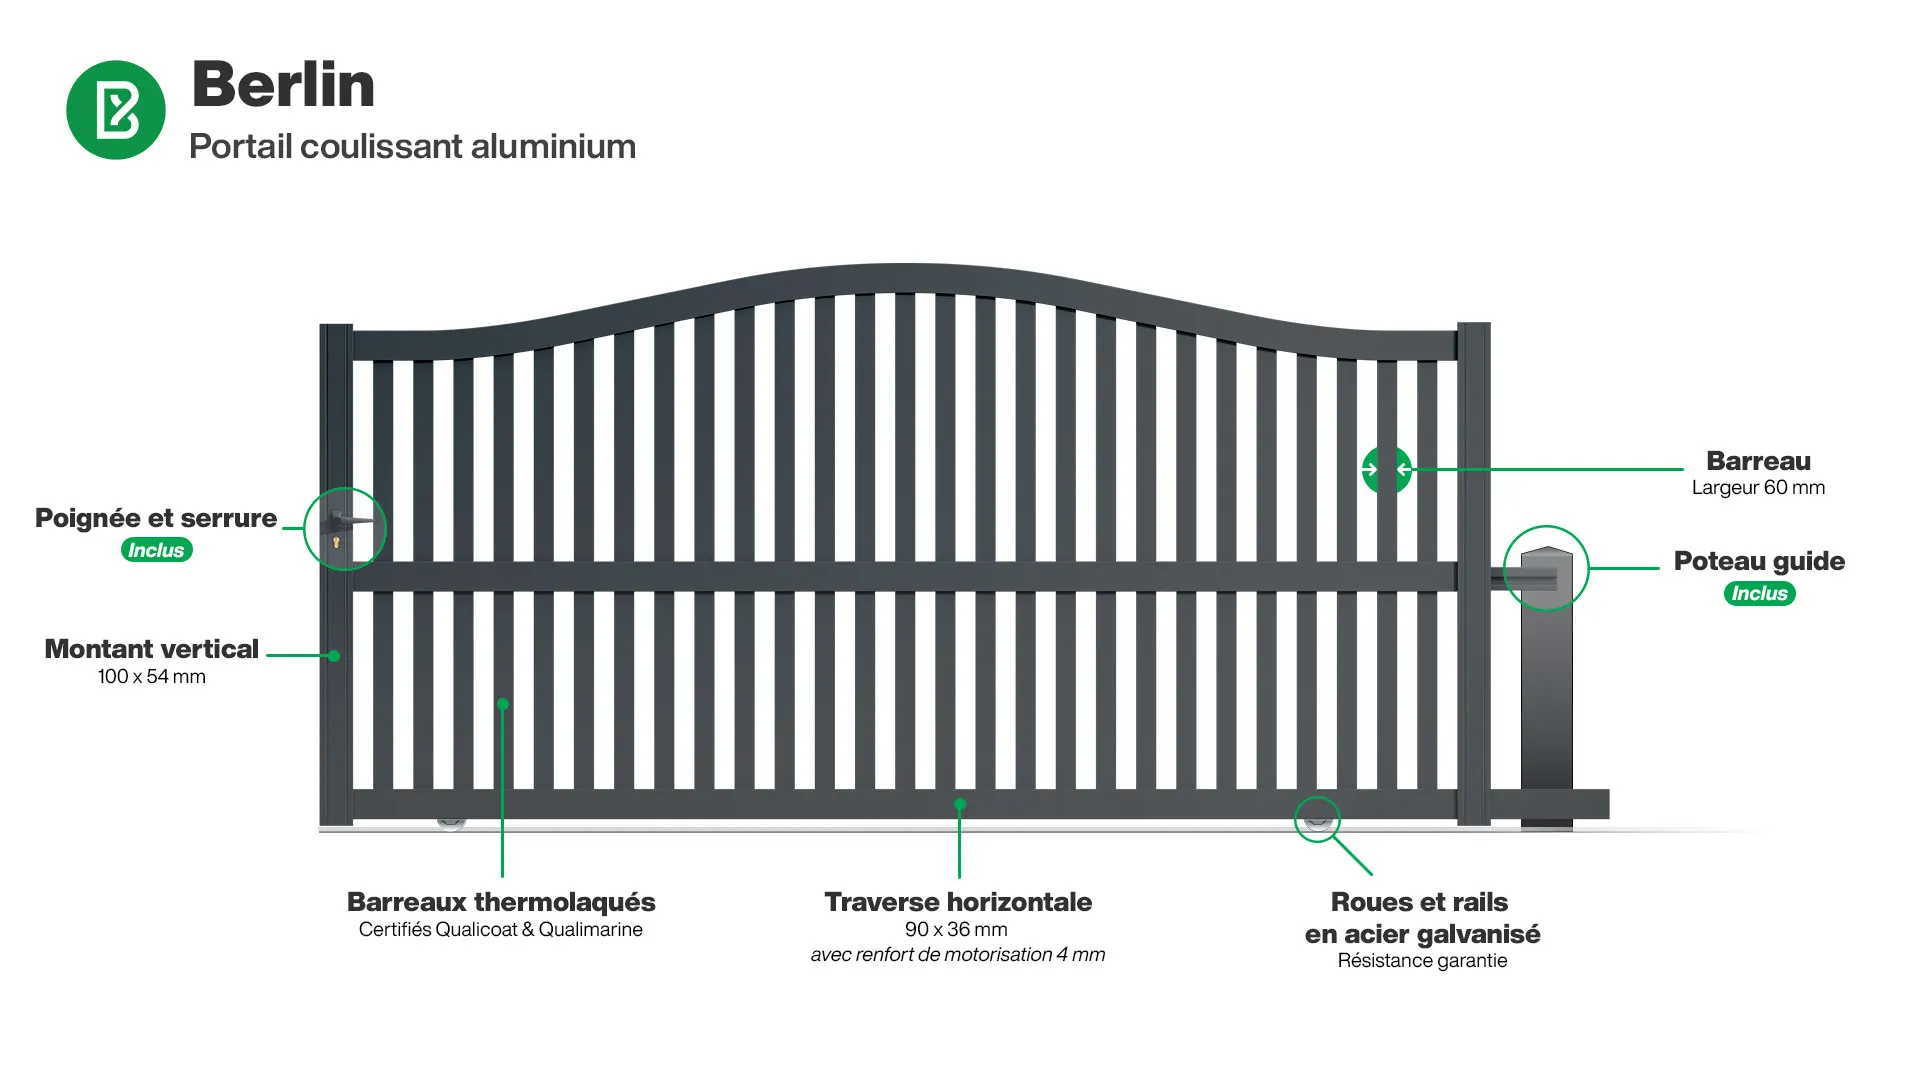 Portail : Infographie d'un portail coulissant aluminium modèle BERLIN